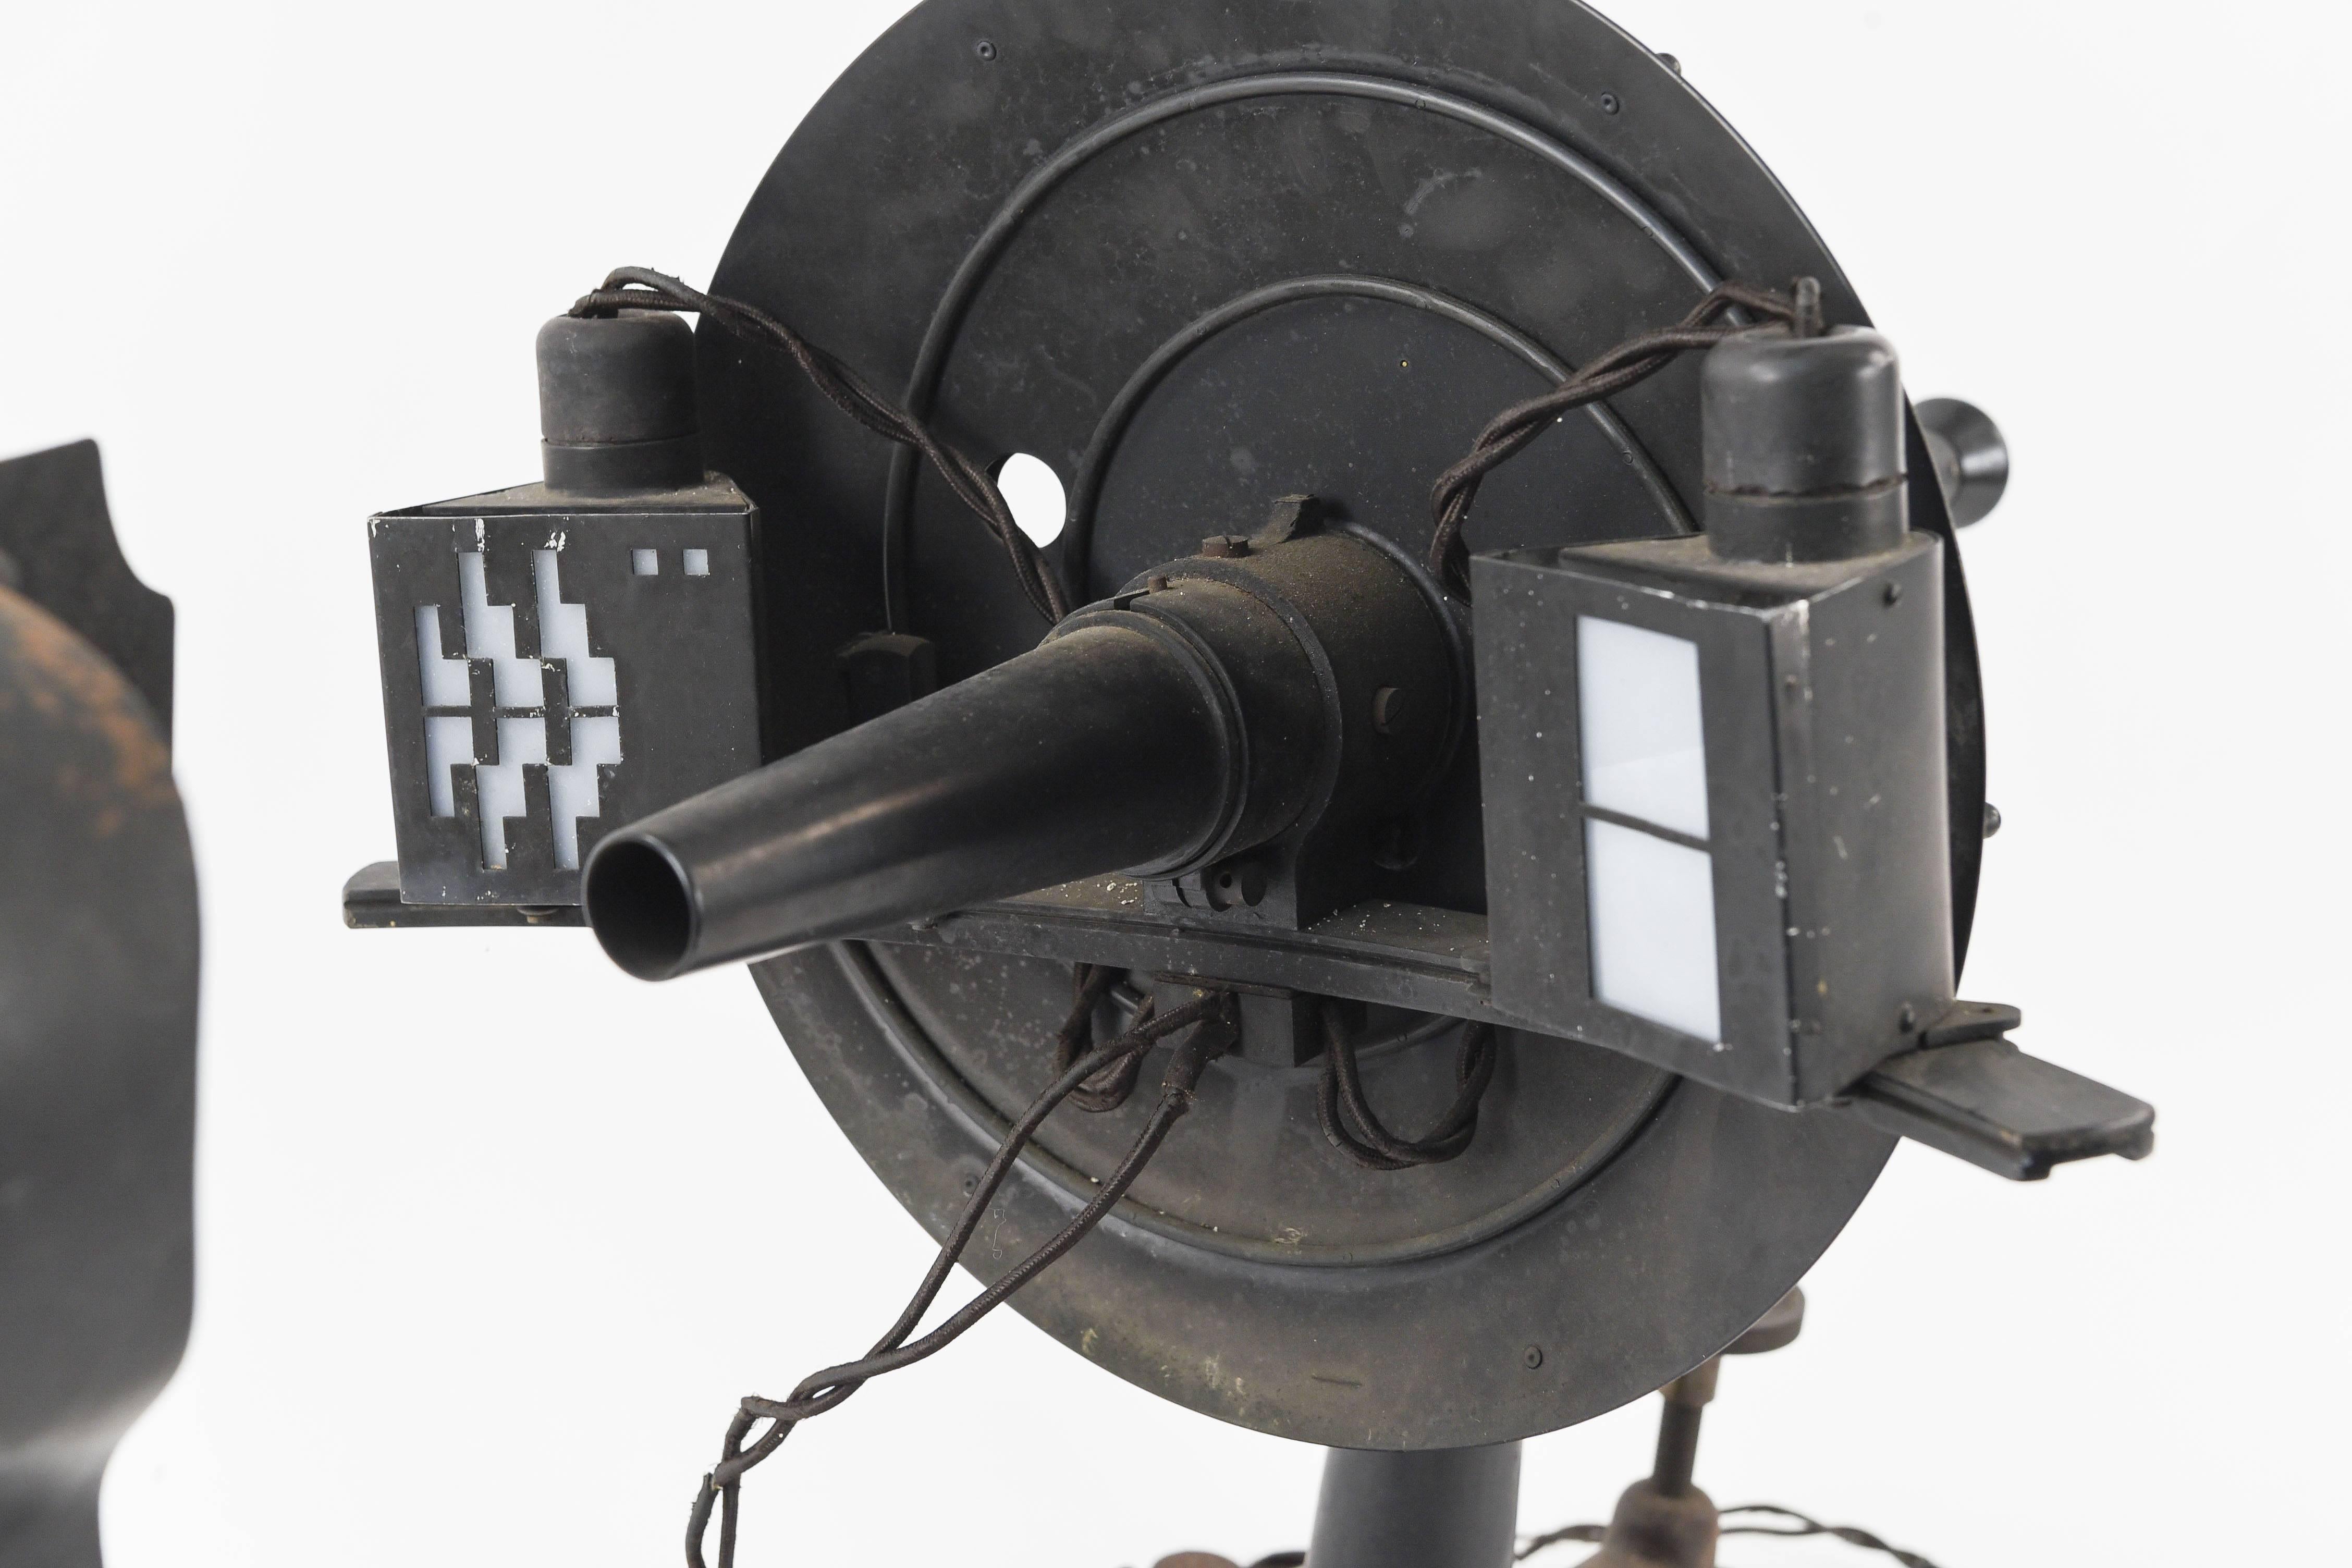 Dieses antike Universal-Ophthalmometer-Augenuntersuchungsgerät der General Optical Company ist mit dem Stempel 